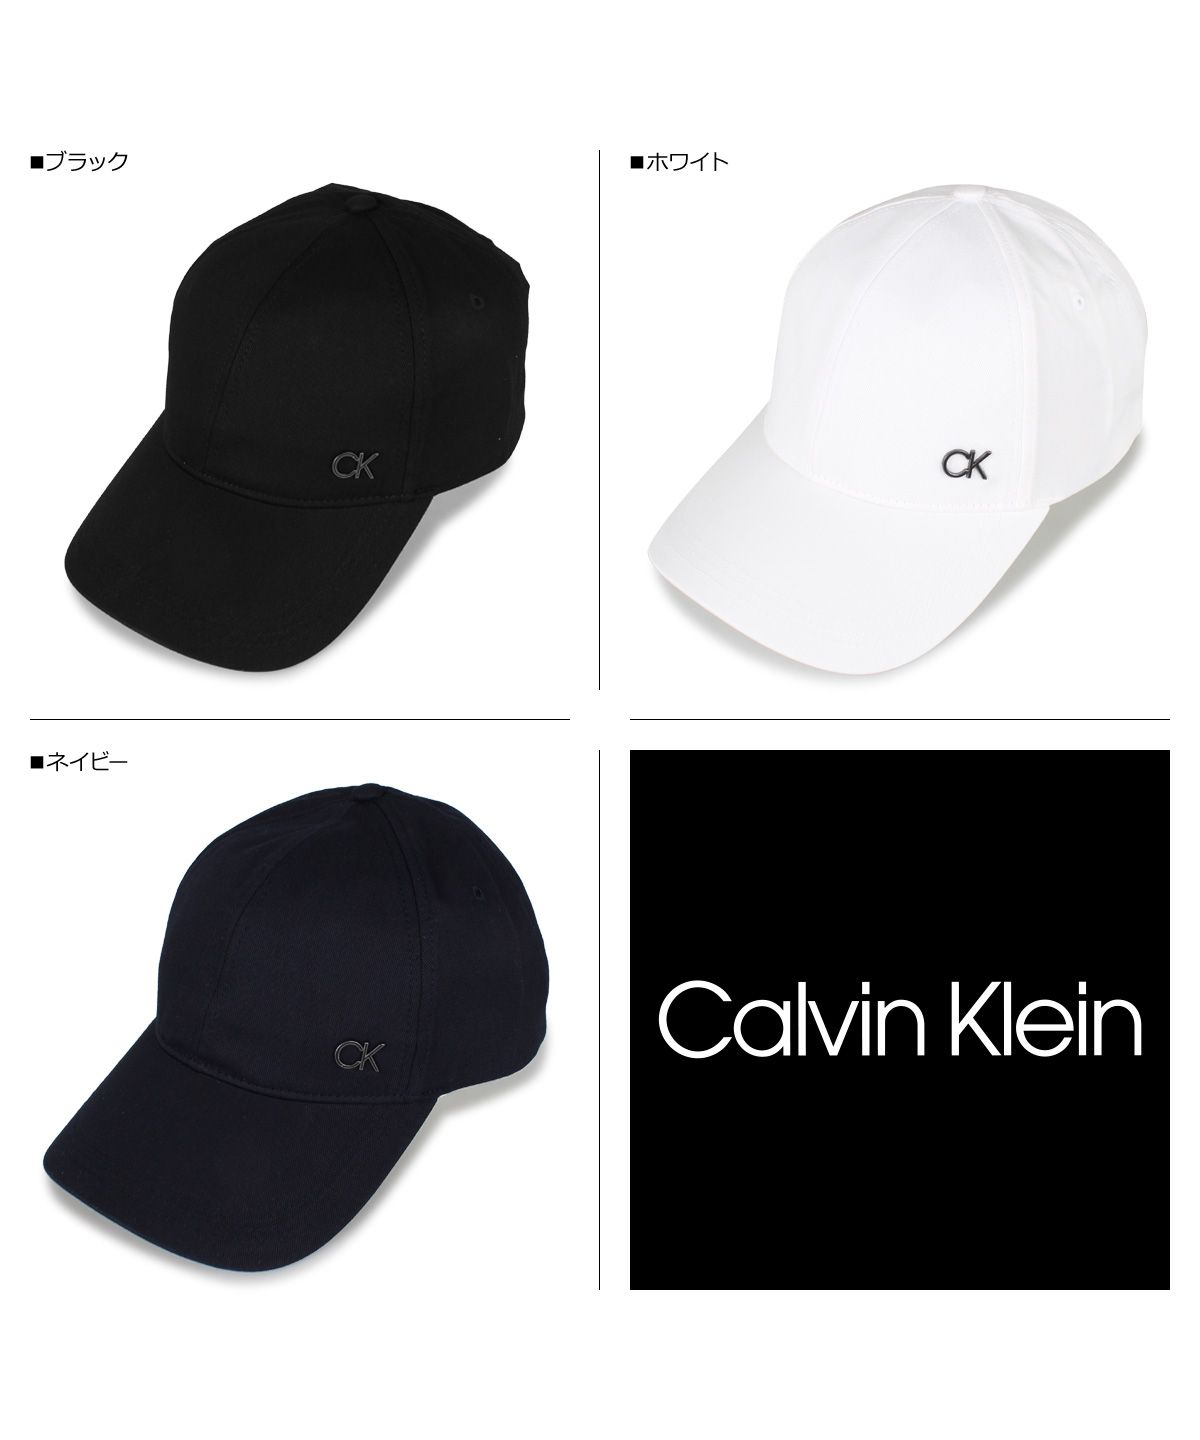 カルバンクライン Calvin Klein キャップ 帽子 ベースボールキャップ メンズ レディース ブラック ホワイト ネイビー 黒 白  K50K506732